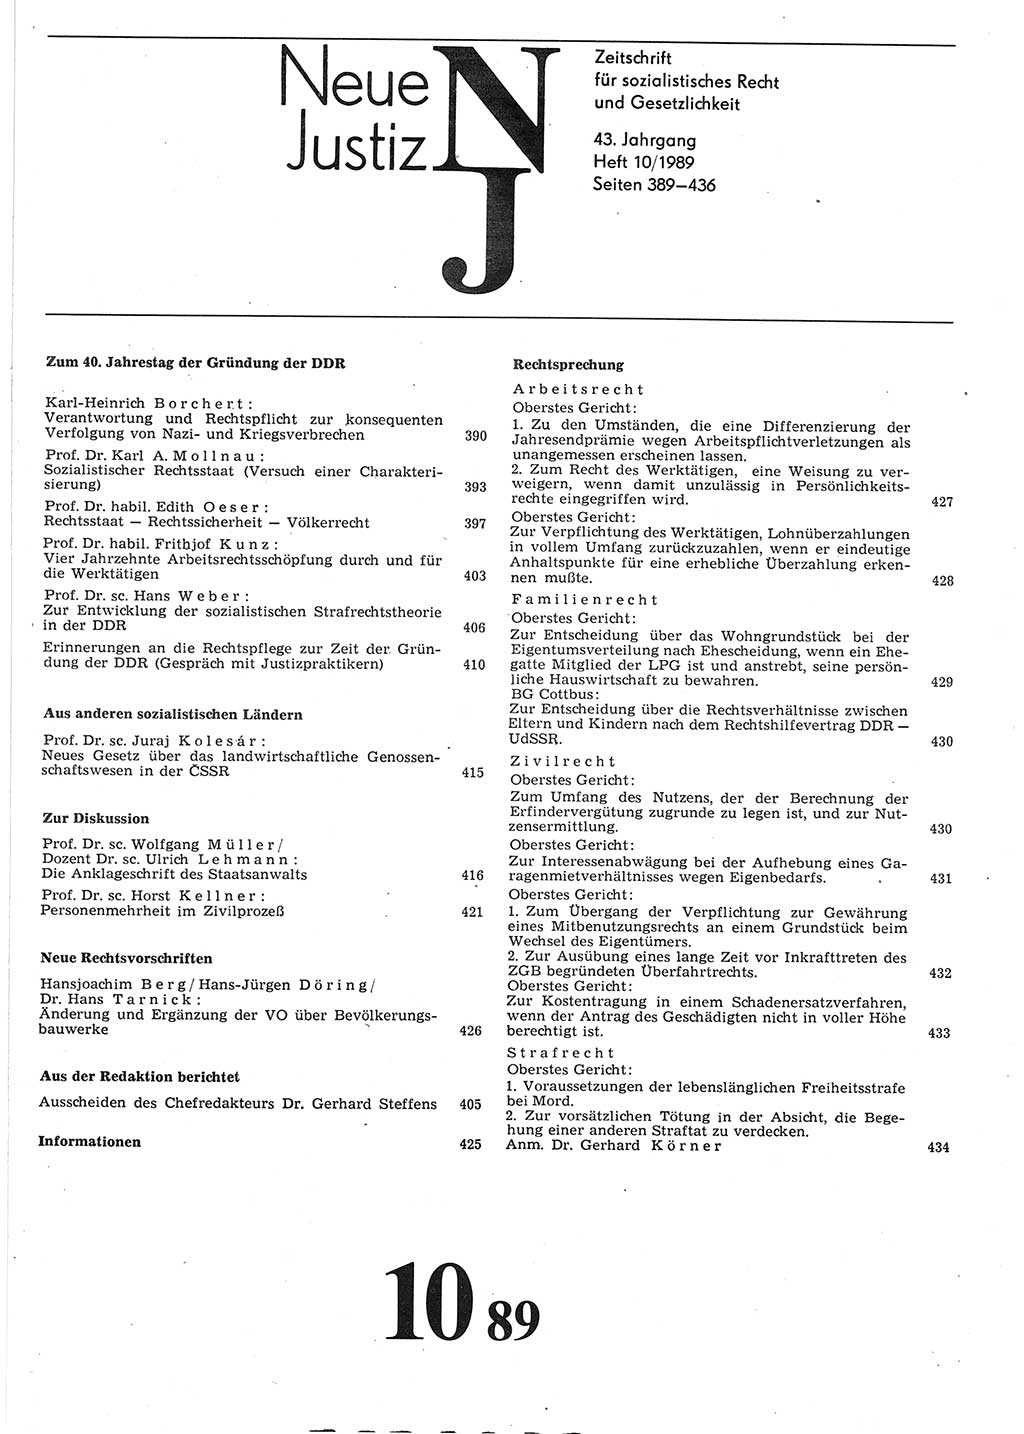 Neue Justiz (NJ), Zeitschrift für sozialistisches Recht und Gesetzlichkeit [Deutsche Demokratische Republik (DDR)], 43. Jahrgang 1989, Seite 389 (NJ DDR 1989, S. 389)